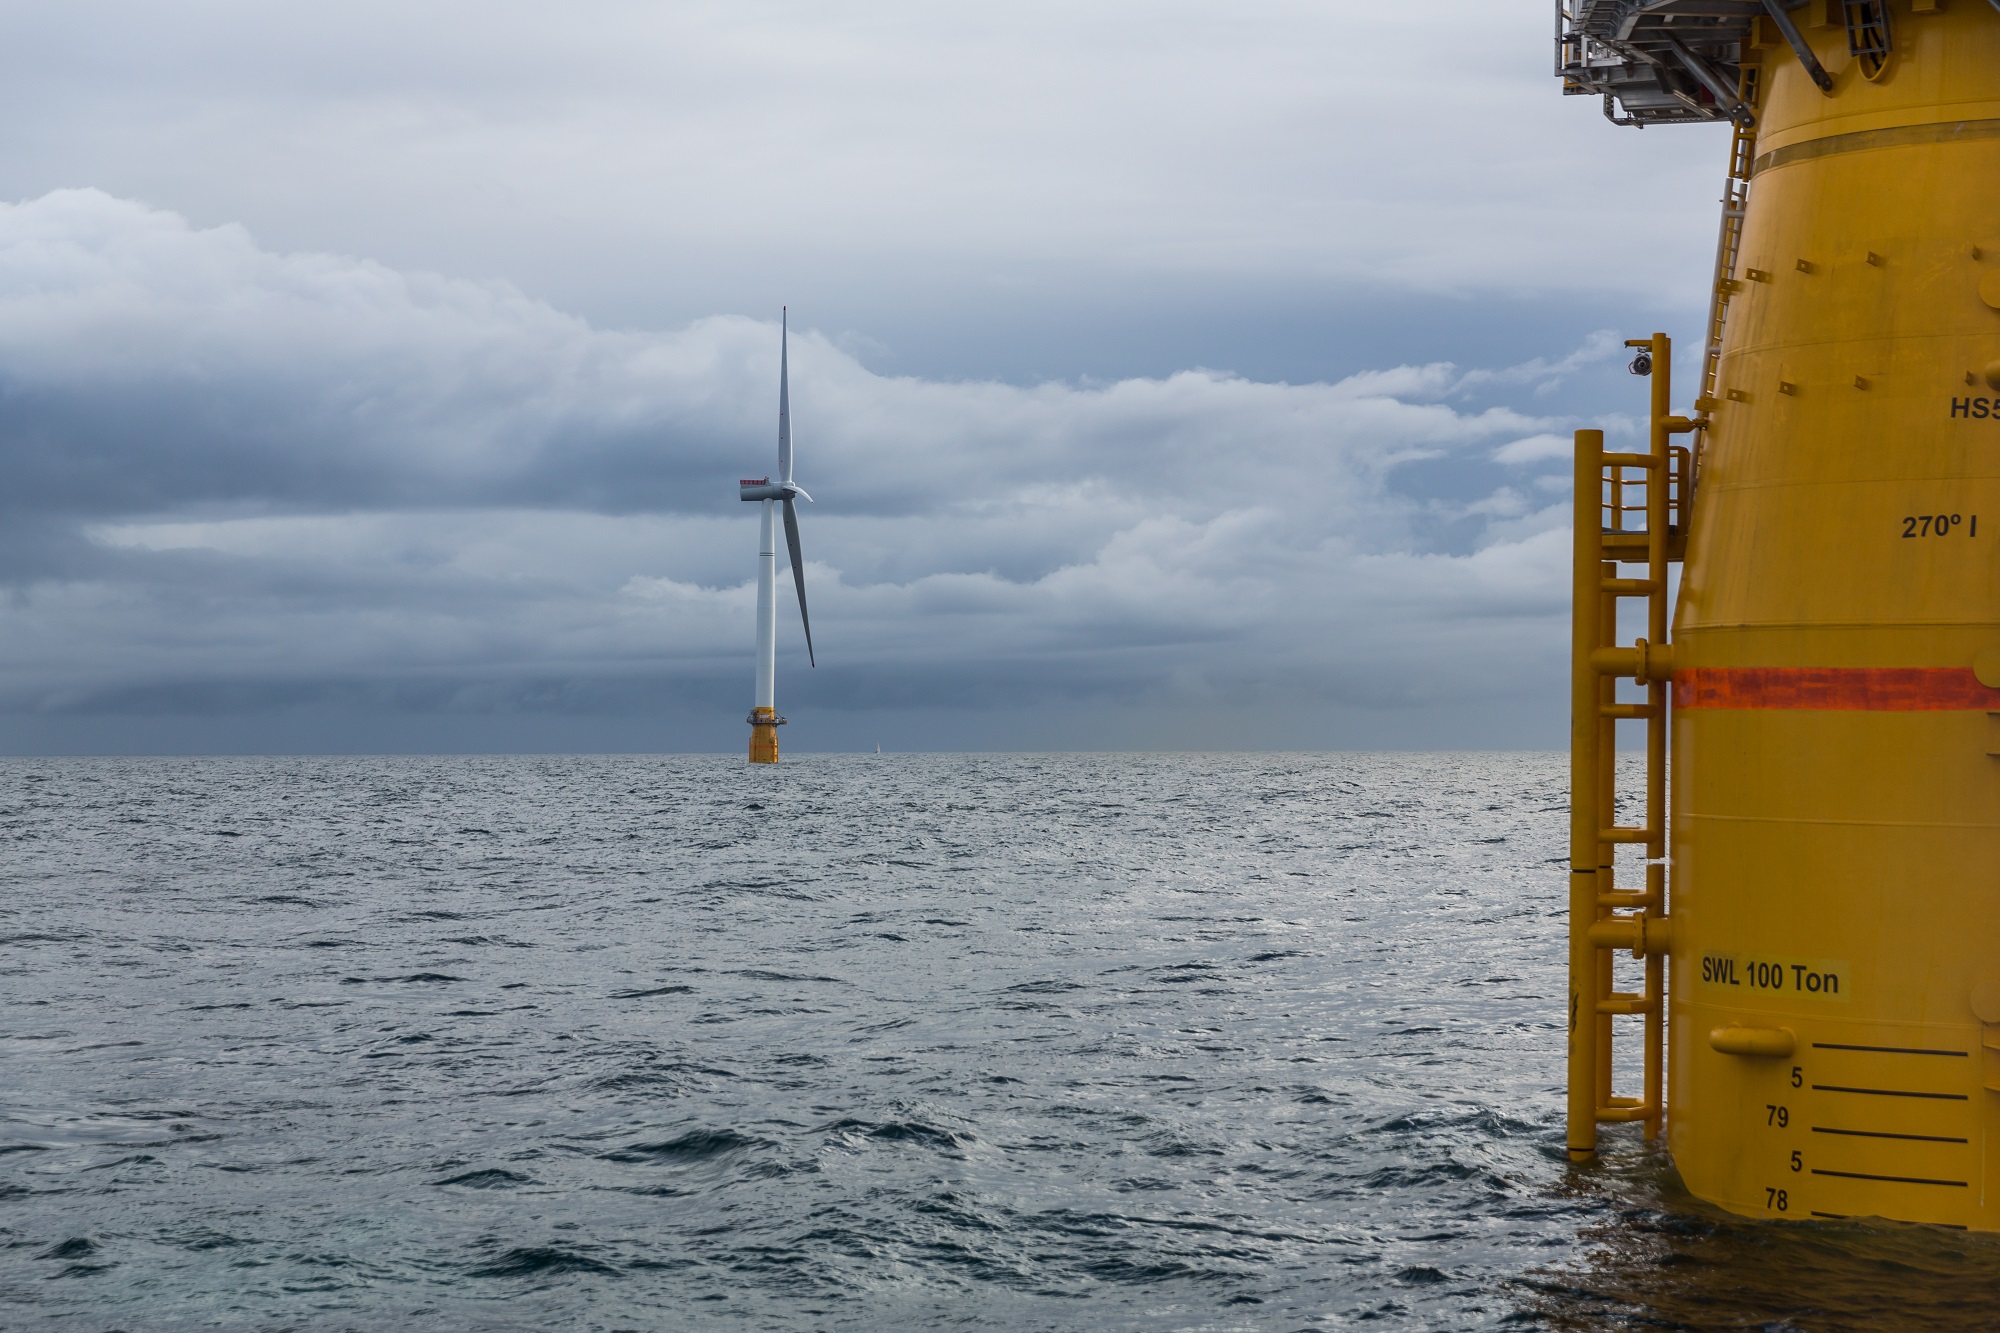 Floating wind farm Hywind Scotland